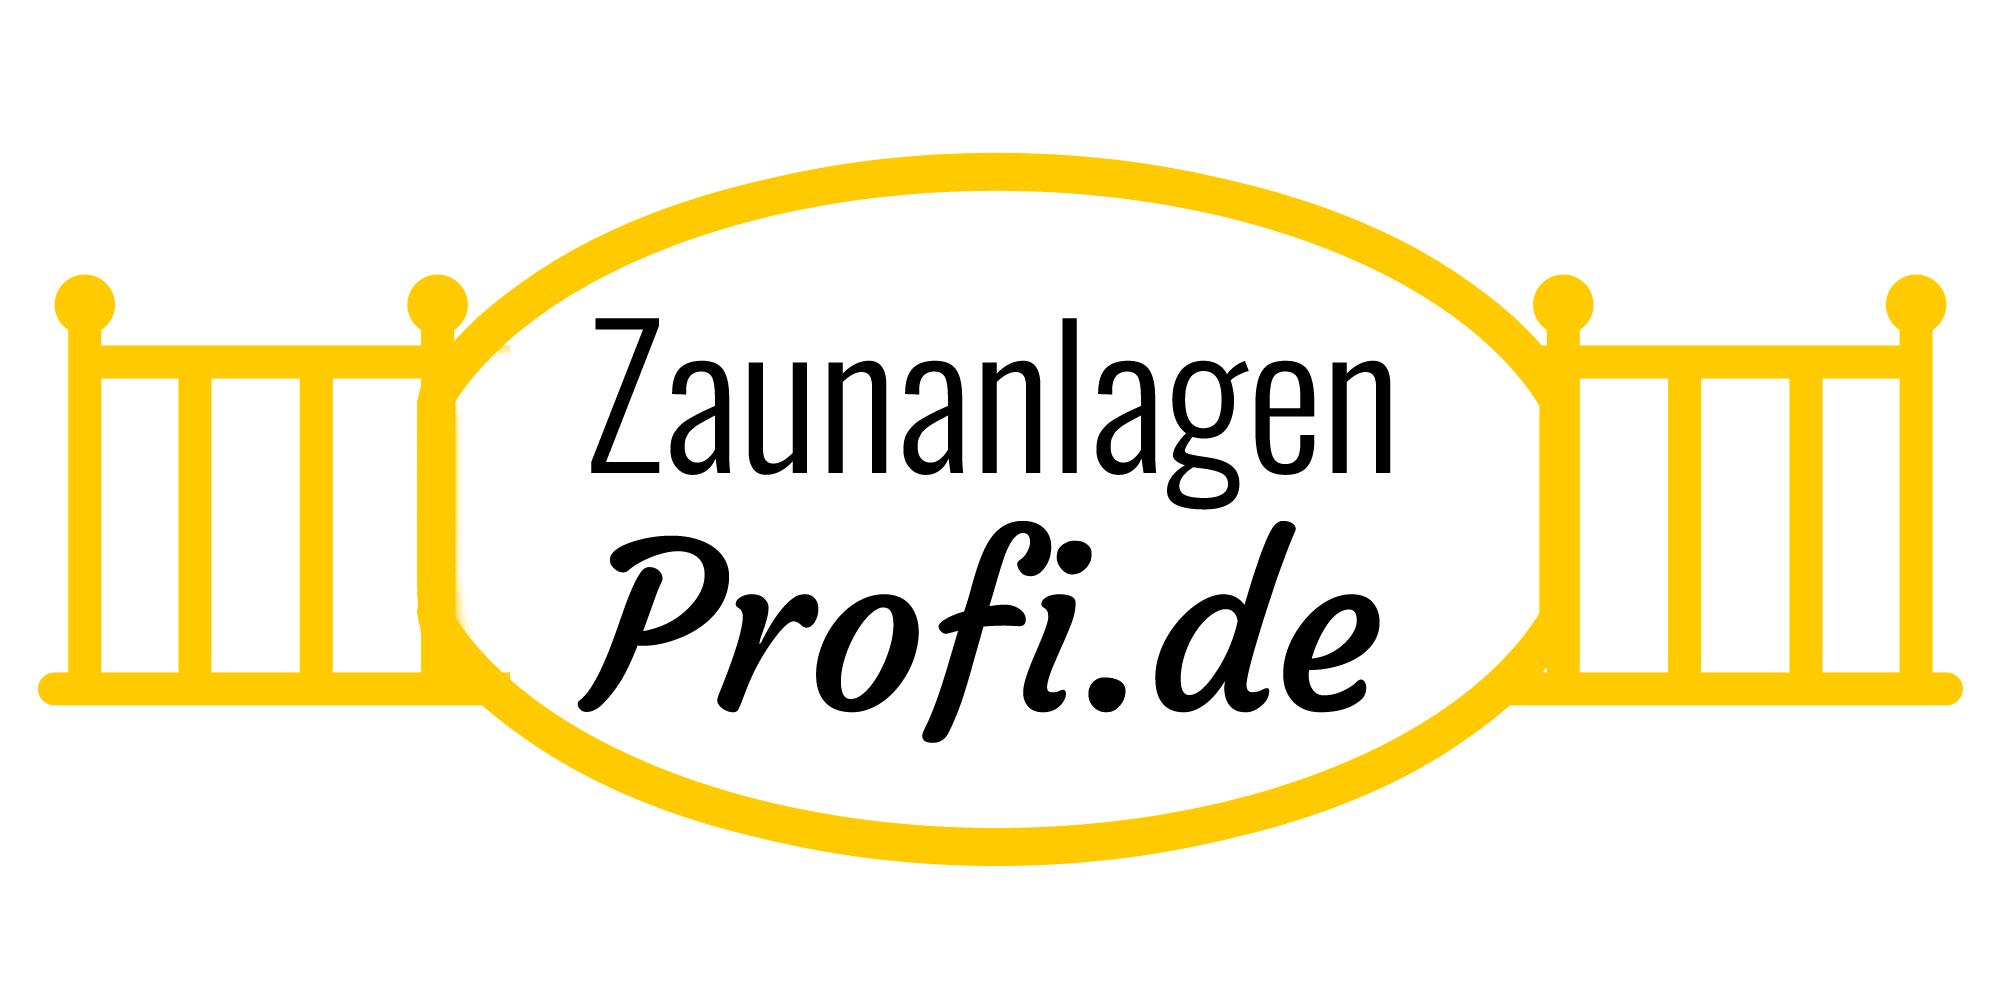 Zaunanlagen-Profi.de - Der Experte für Stabmattenzäune